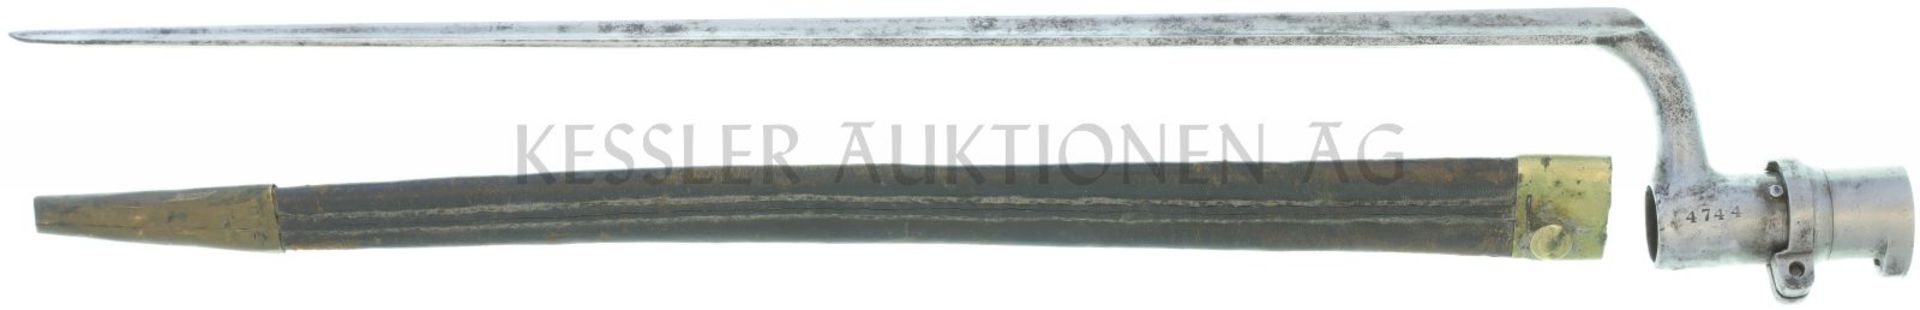 Dreikant-Stichbajonett 1817/42 Tüllendurchmesser 21.3mm, Arretierring, braune Lederscheide mit